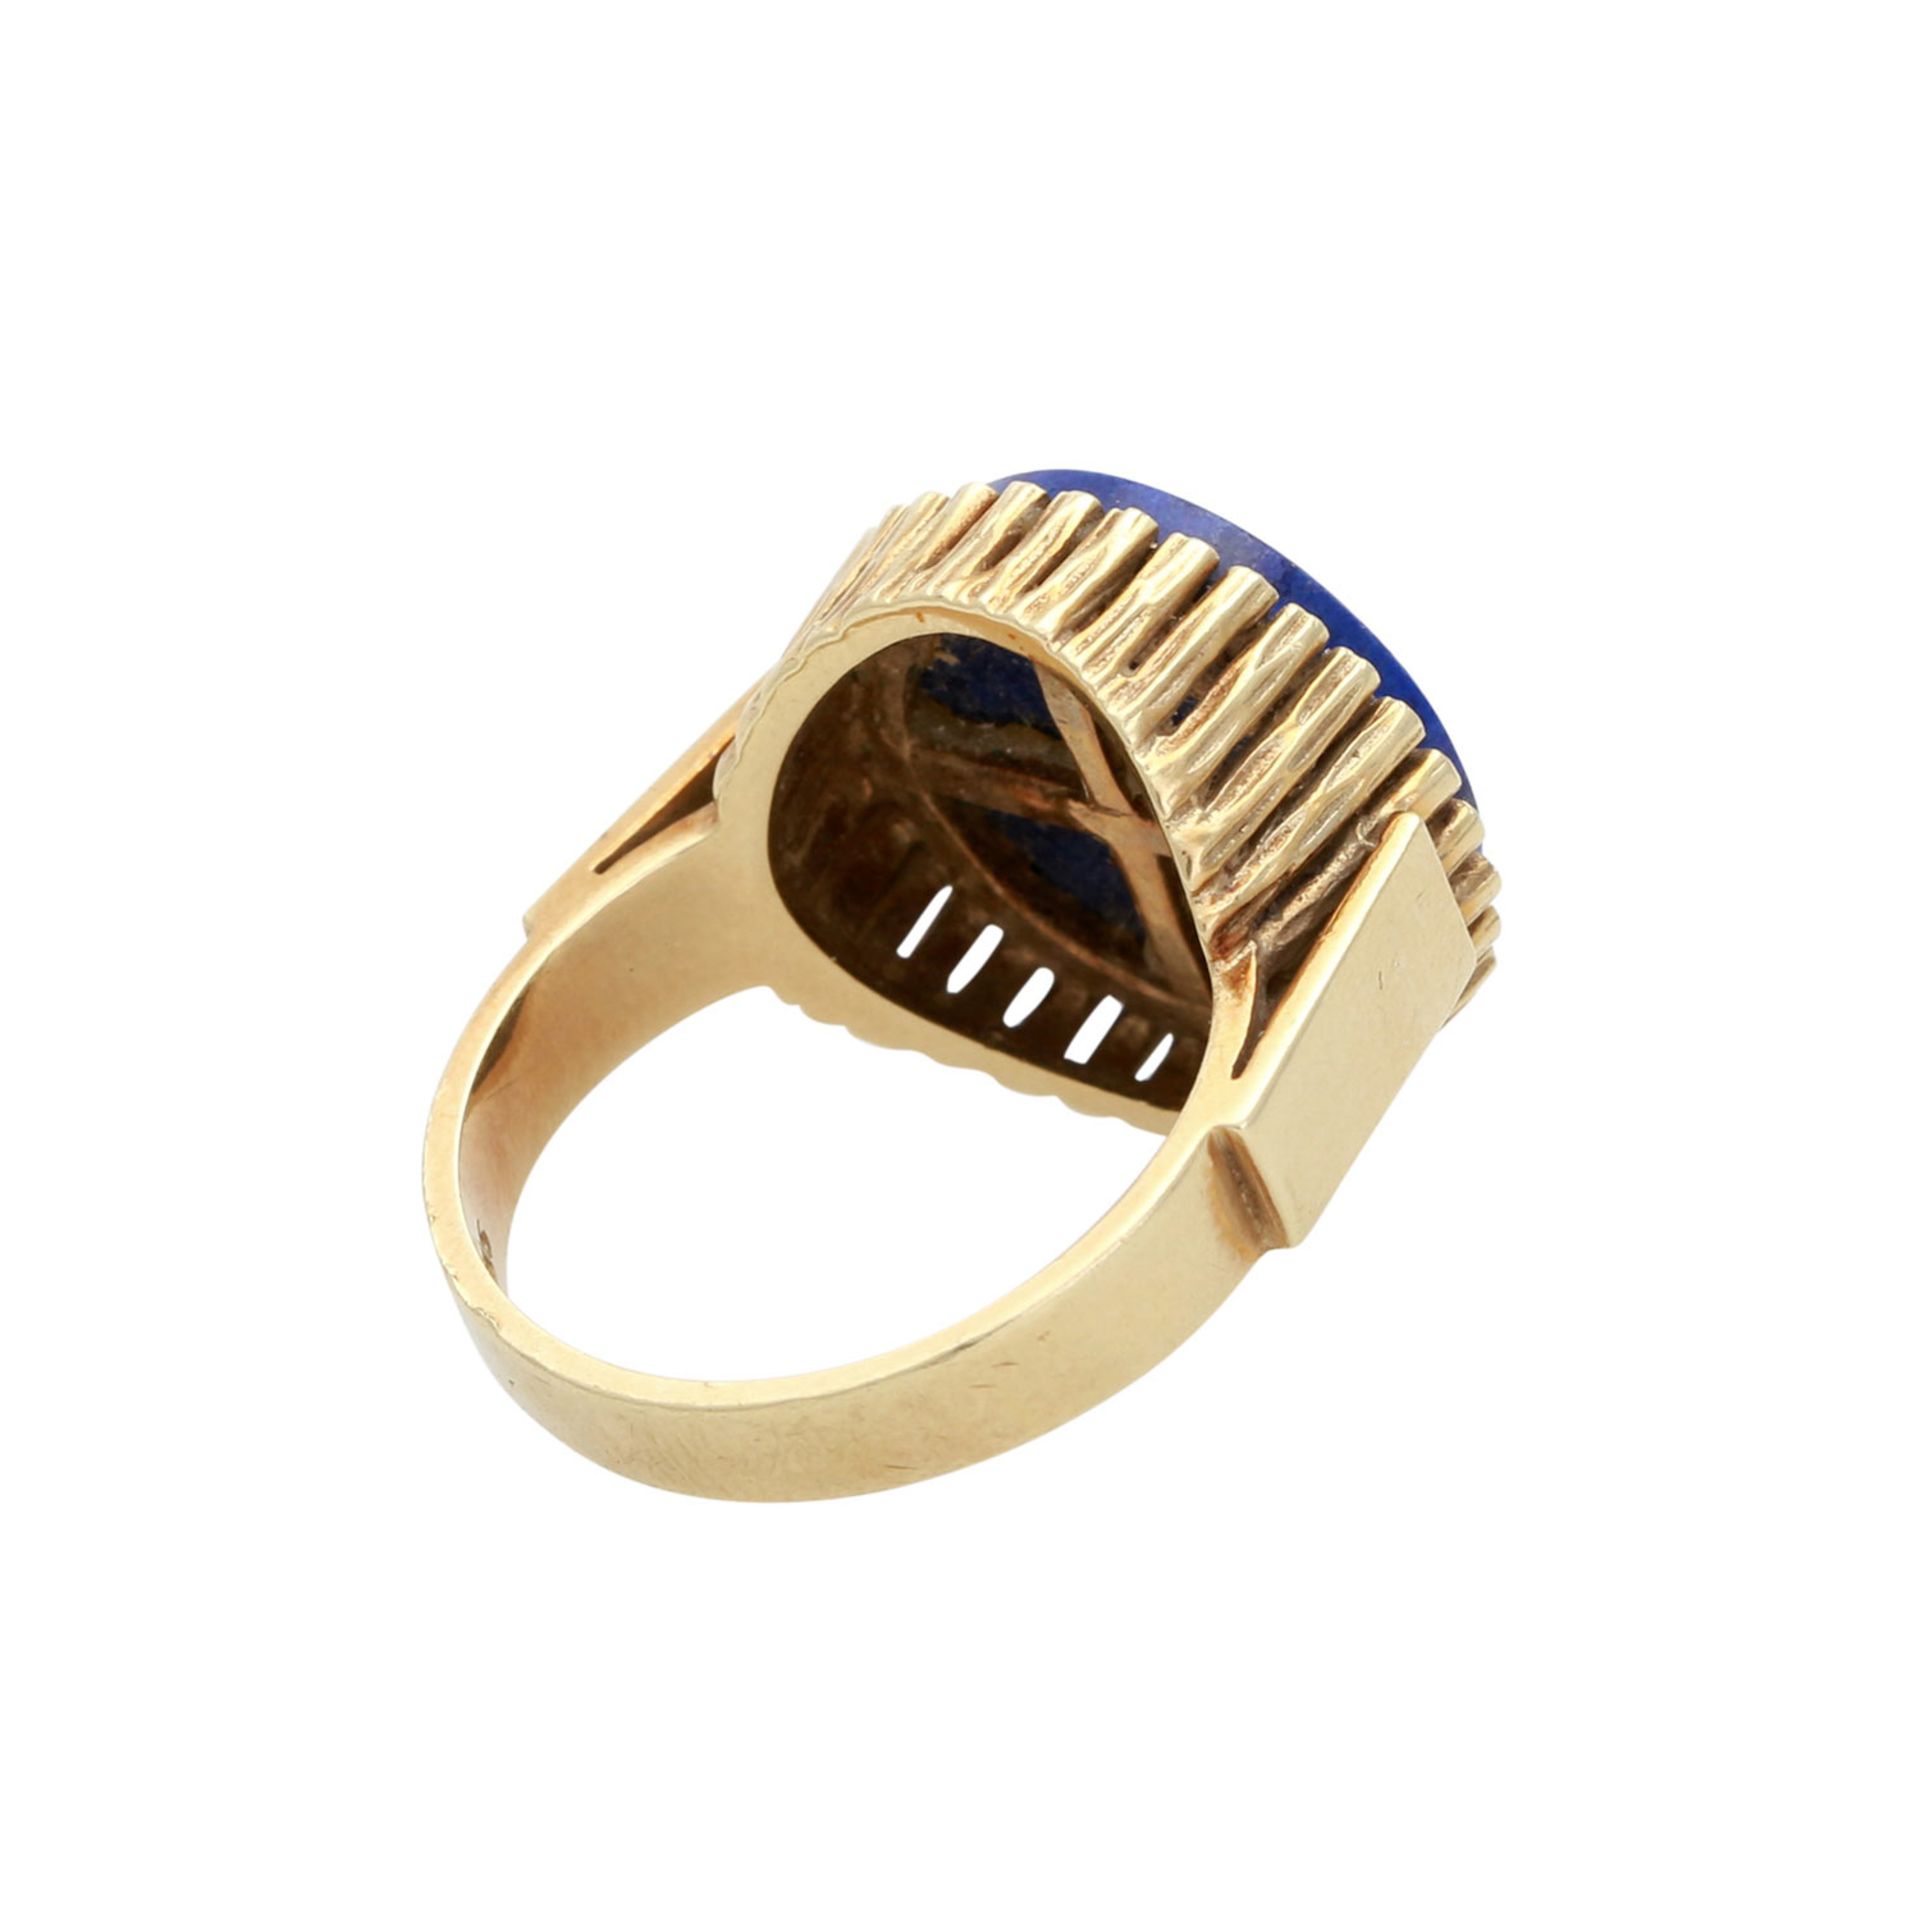 FAHRNER Ring mit Lapislazuli-Scheibe in runder Fassung aus amorph strukturierten Stäbchen. GG 14K, - Bild 3 aus 4